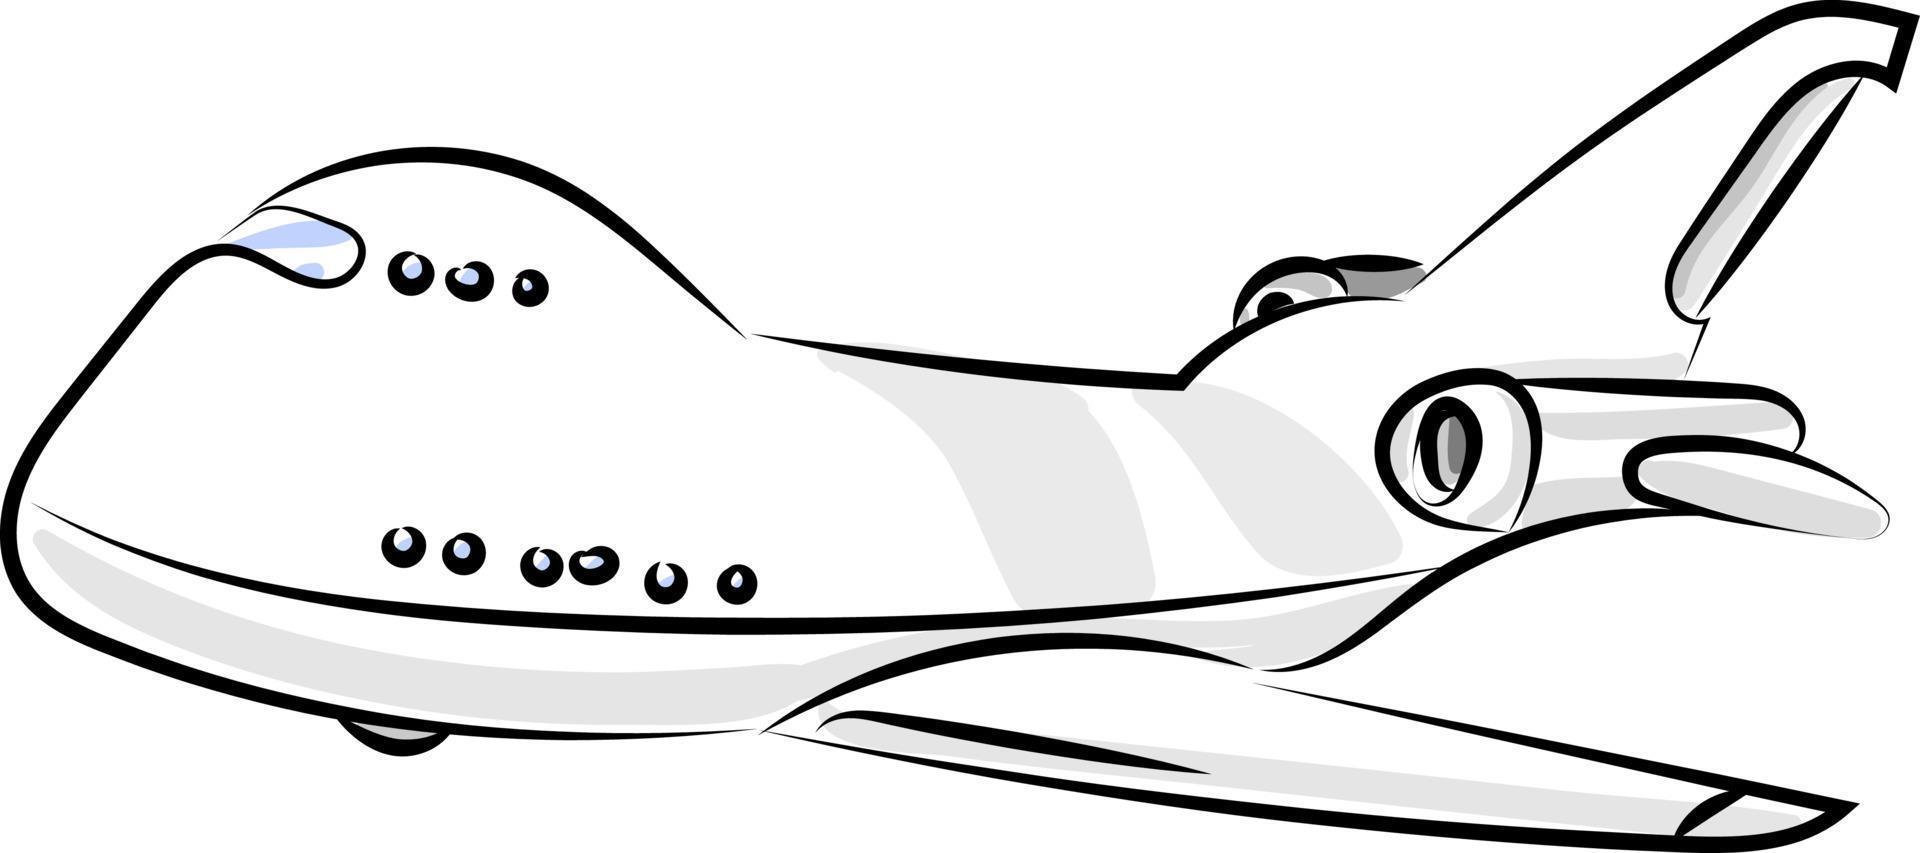 gran ariplane, ilustración, vector sobre fondo blanco.